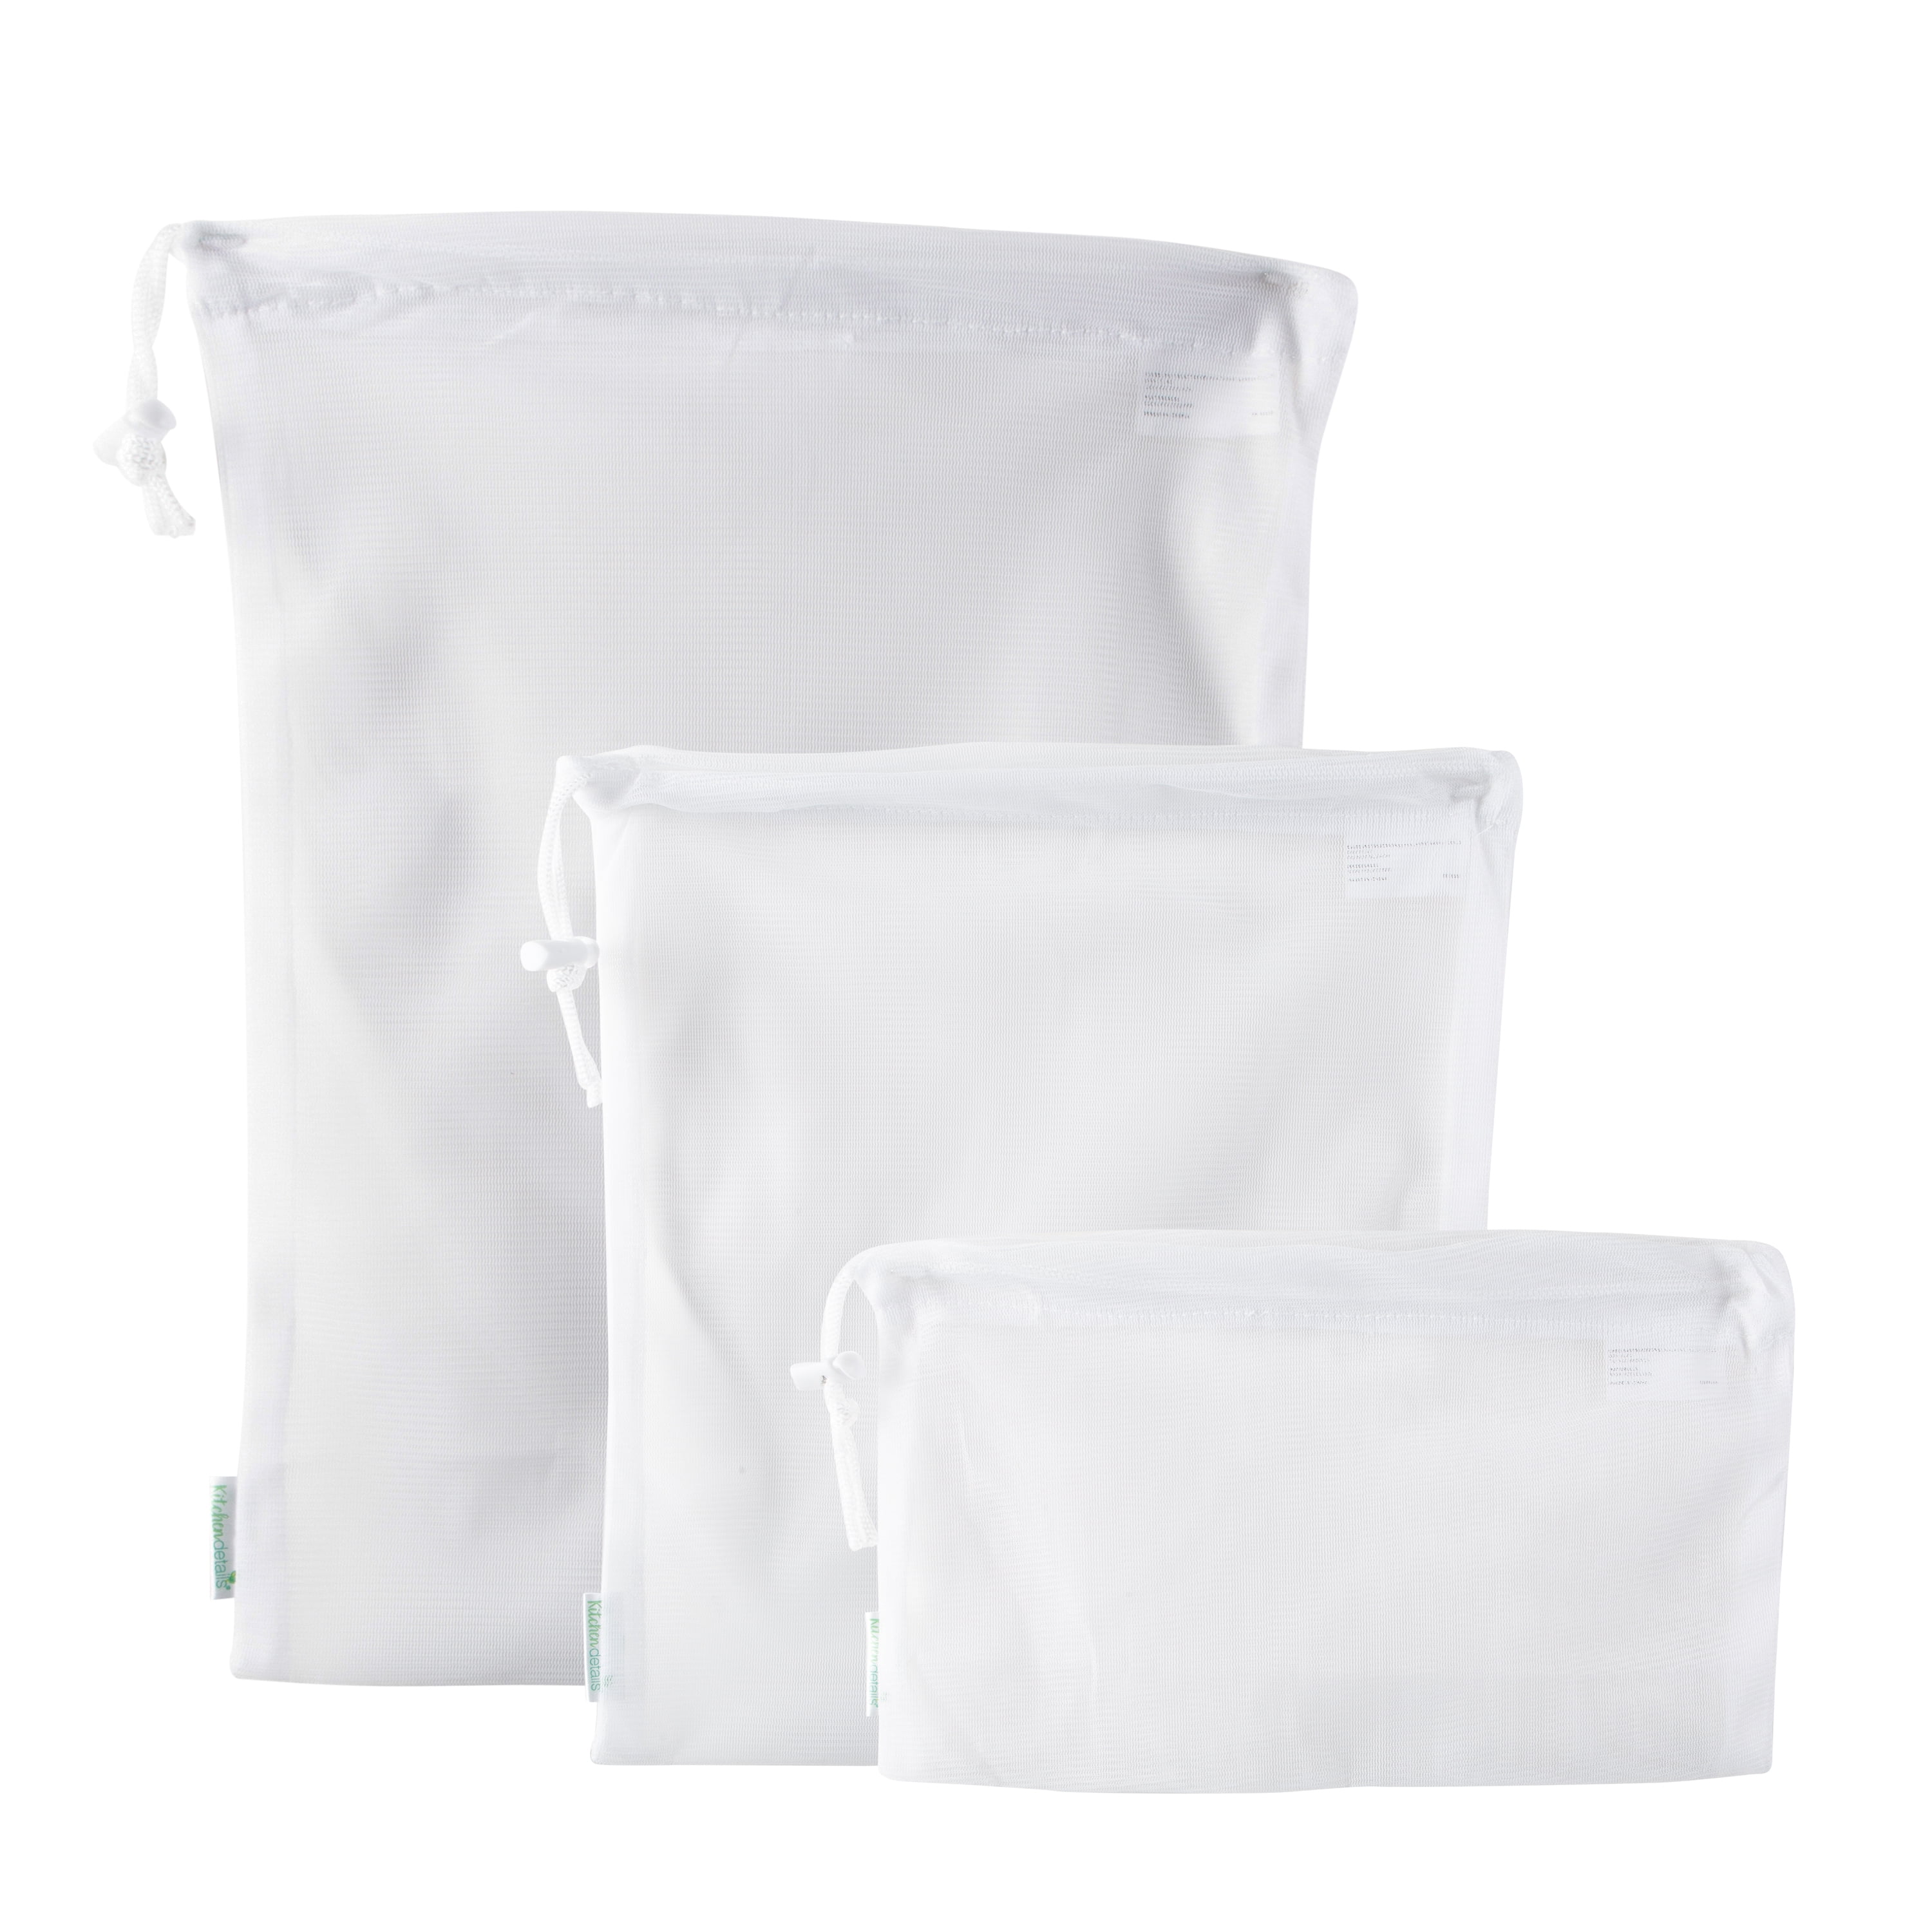 Wabjtam [4 Pack] Premium Mesh Grocery Bags, Reusable Produce Bags